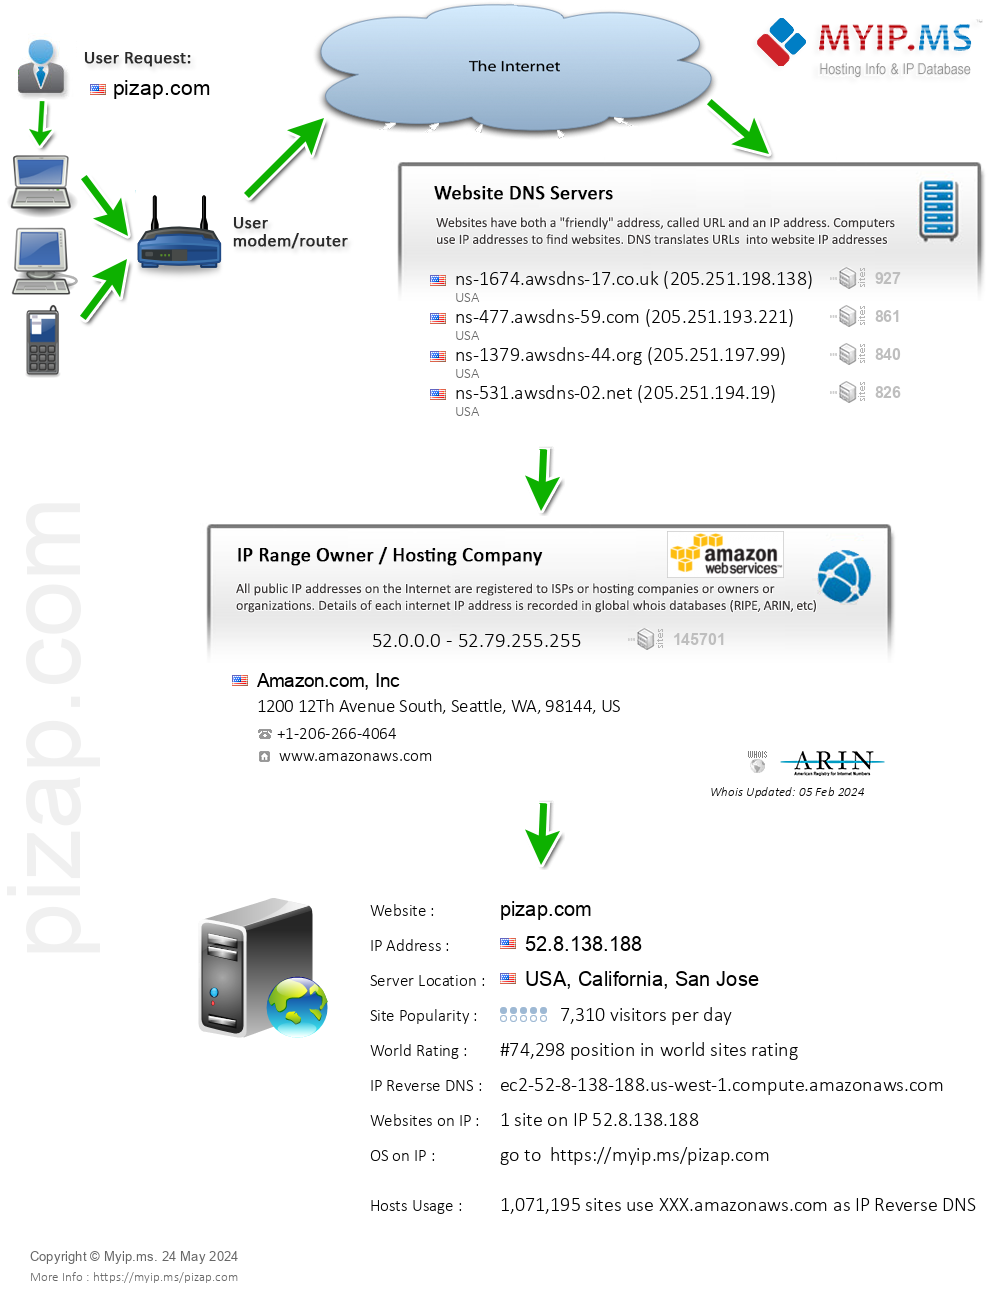 Pizap.com - Website Hosting Visual IP Diagram